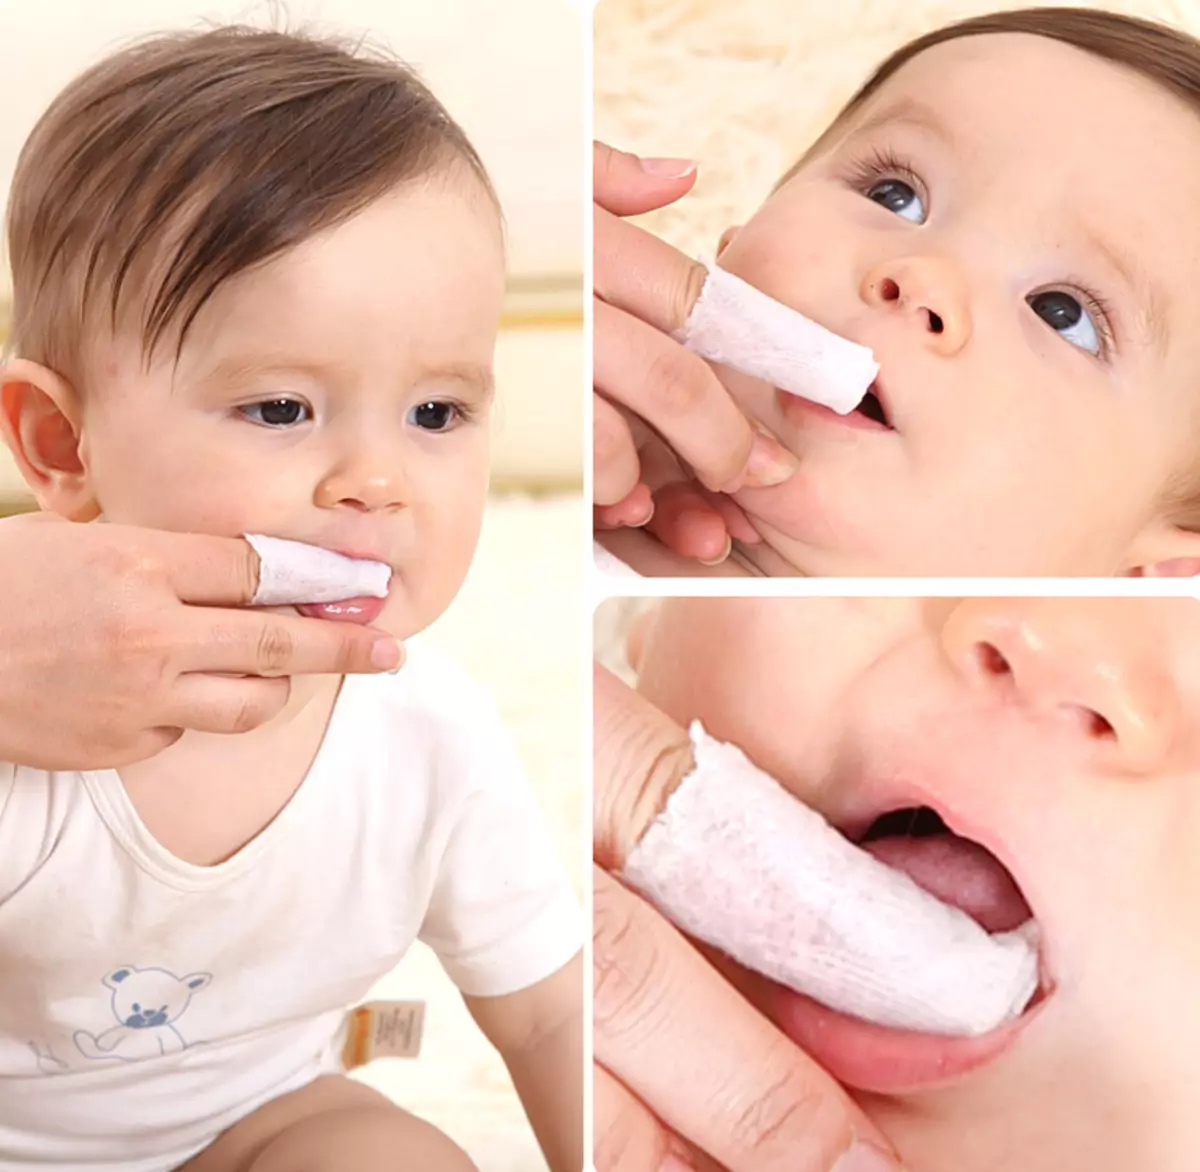 როგორ დაიხუროს კბილები ბავშვებს? ზრუნვა პირველი კბილების ჩვილ ბავშვთა წელს, კბილების დასუფთავების ტექნიკა ბავშვი 2 წლის განმავლობაში, წესები სხვა ასაკისთვის. რამდენი დრო გჭირდება კბილების კბილზე? 16141_3